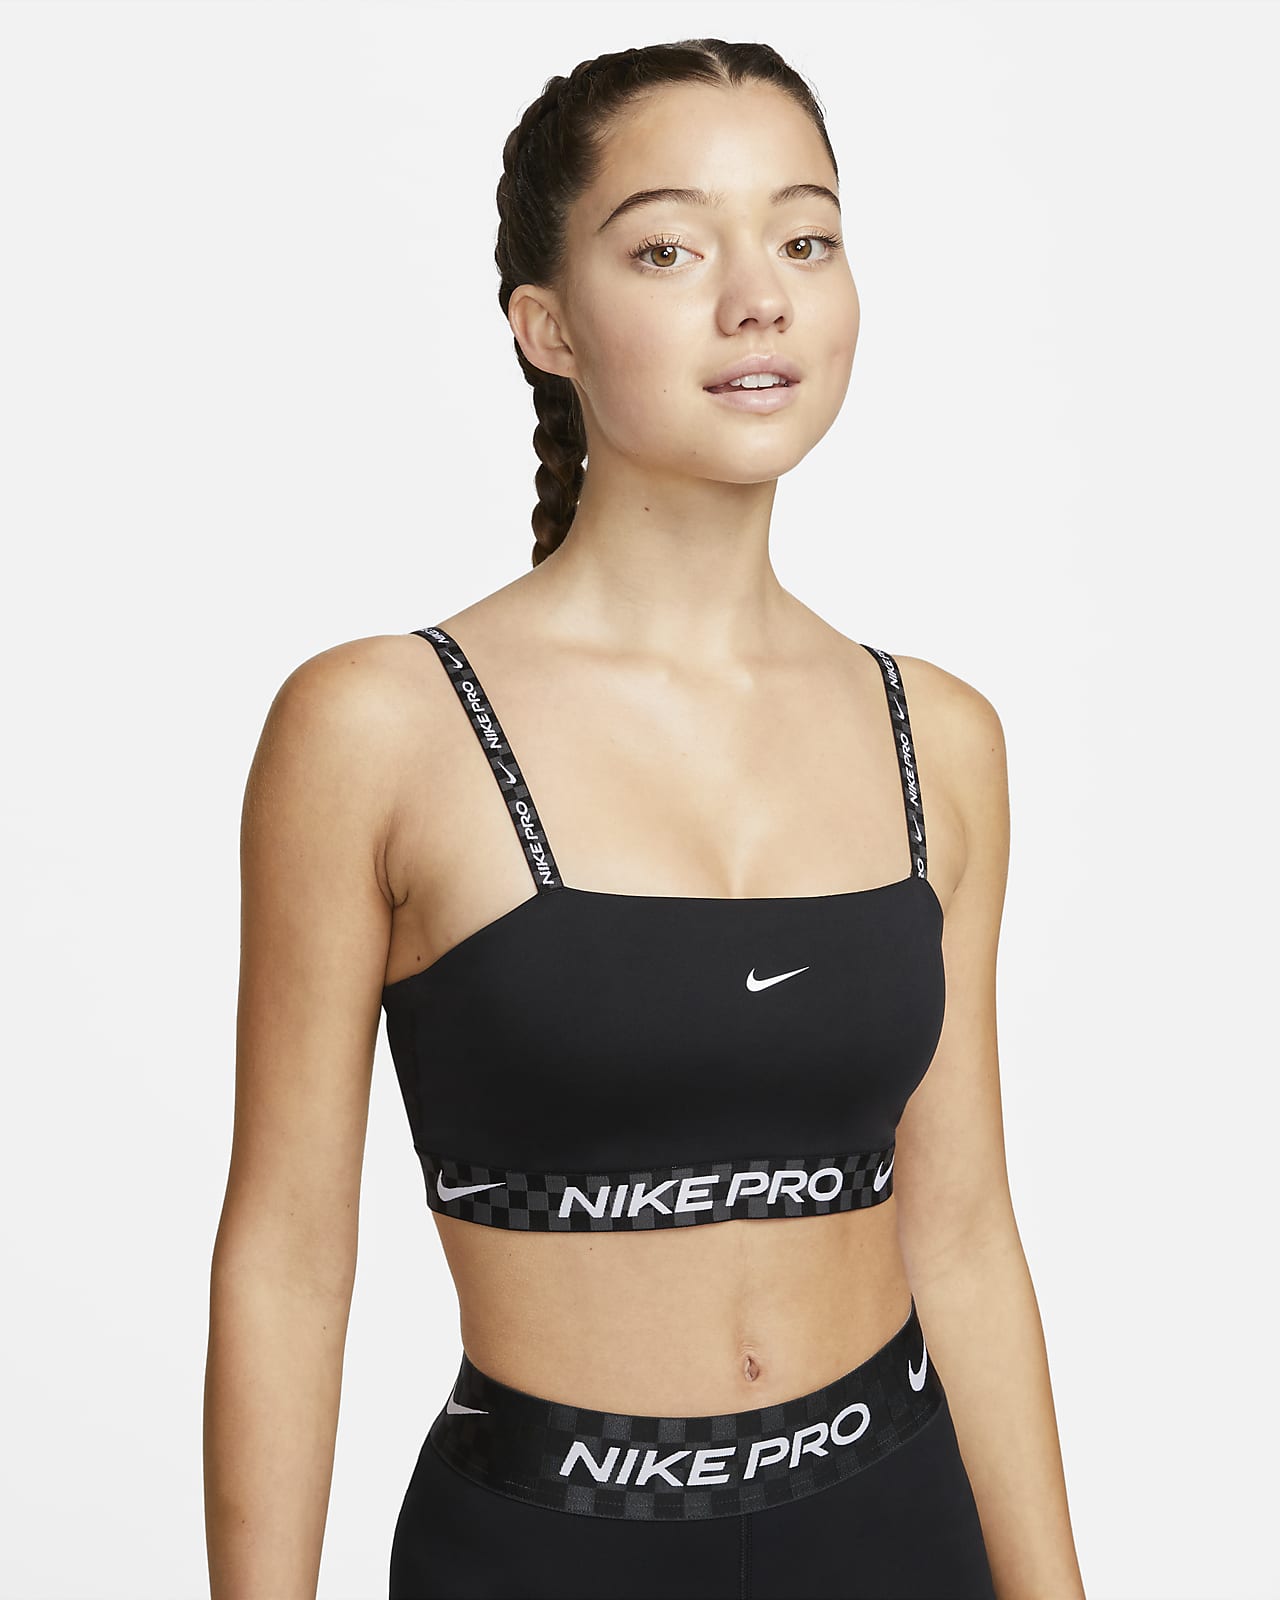 Nike Pro Indy Hafif Destekli Dolgulu Askısız Bikini Üstü Stili Kadın Spor Sütyeni